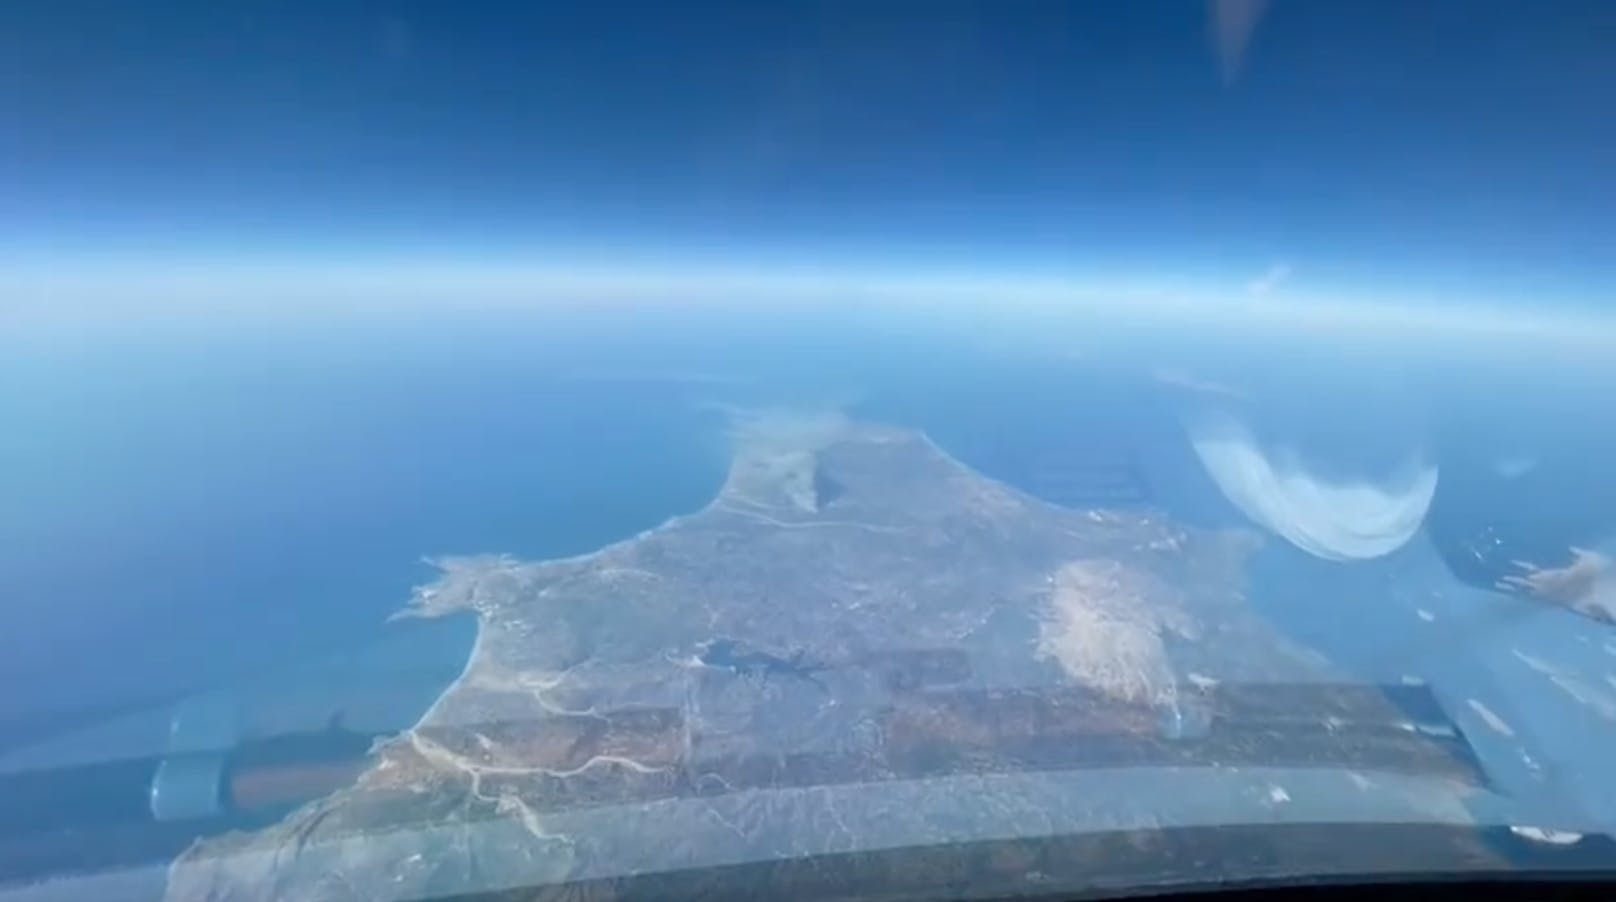 Das auf Social Media kursierende Video zeigt mehr als nur Rauchschwaden, die von Rhodos aufsteigen. So geben die Reflexionen in der Cockpit-Scheibe einen Hinweis, um welchen Flugzeugtyp es sich höchstwahrscheinlich handelt.